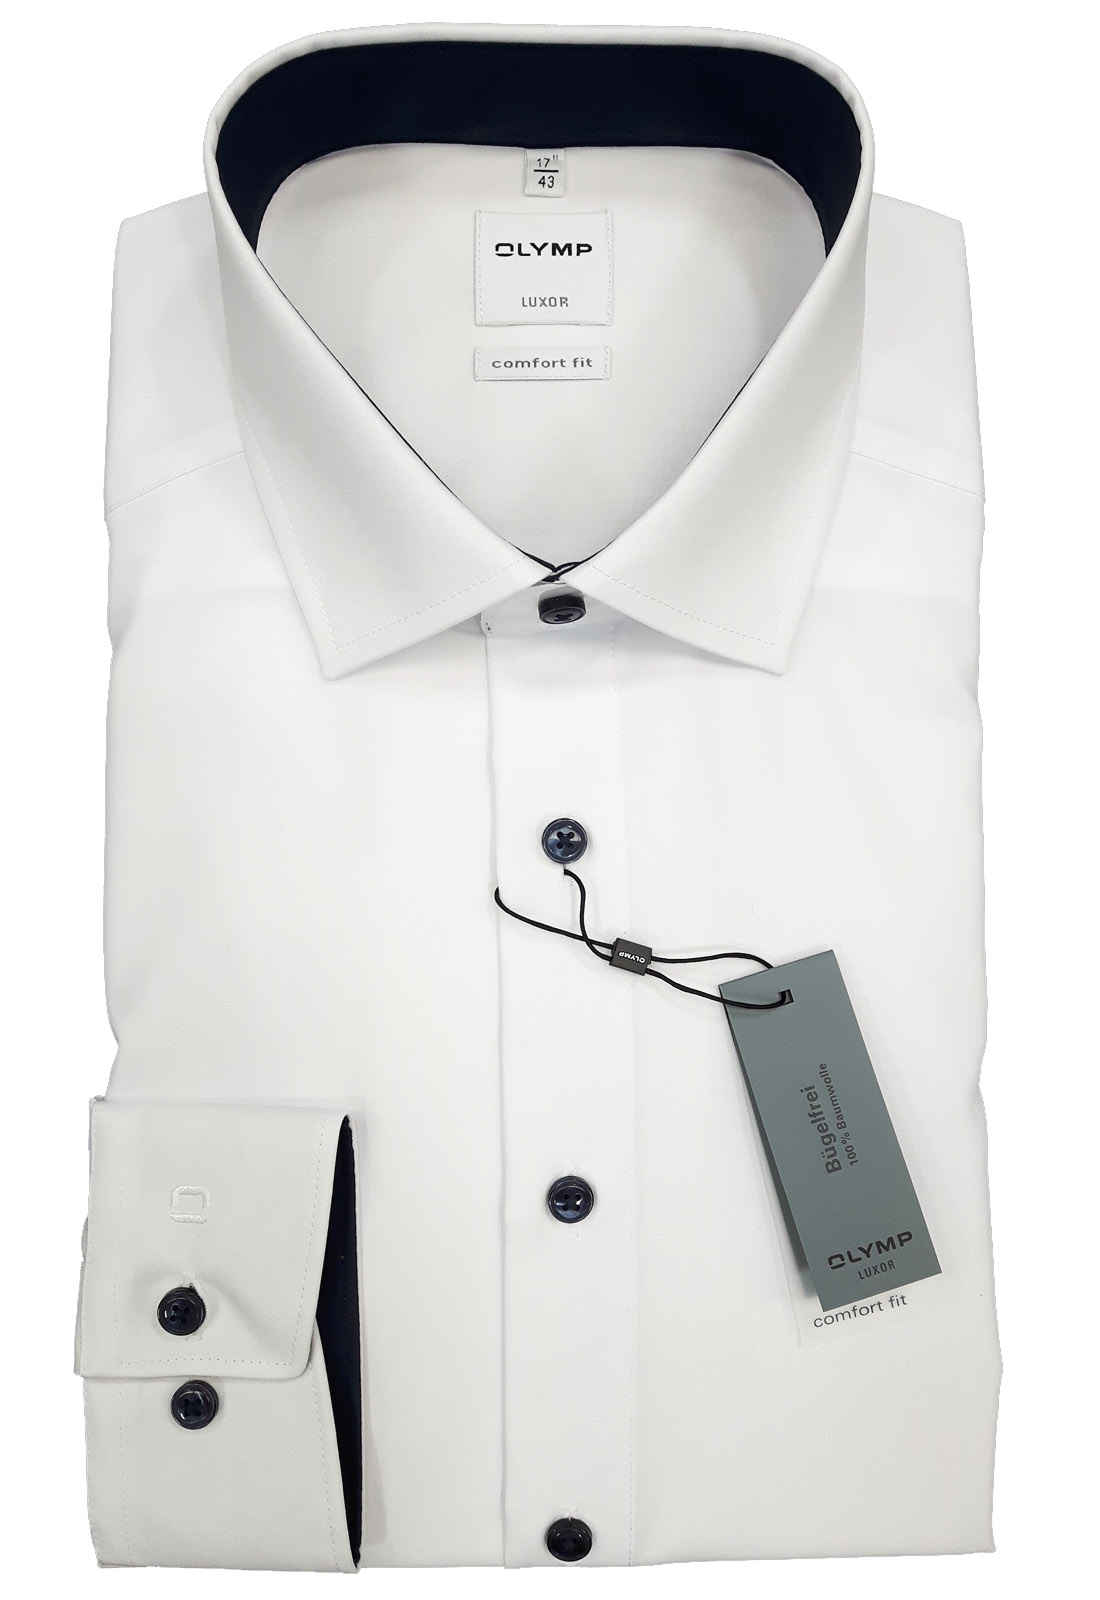 OLYMP mit Hemd Logo-Bestickung weiß/marine fit, LA, Luxor comfort